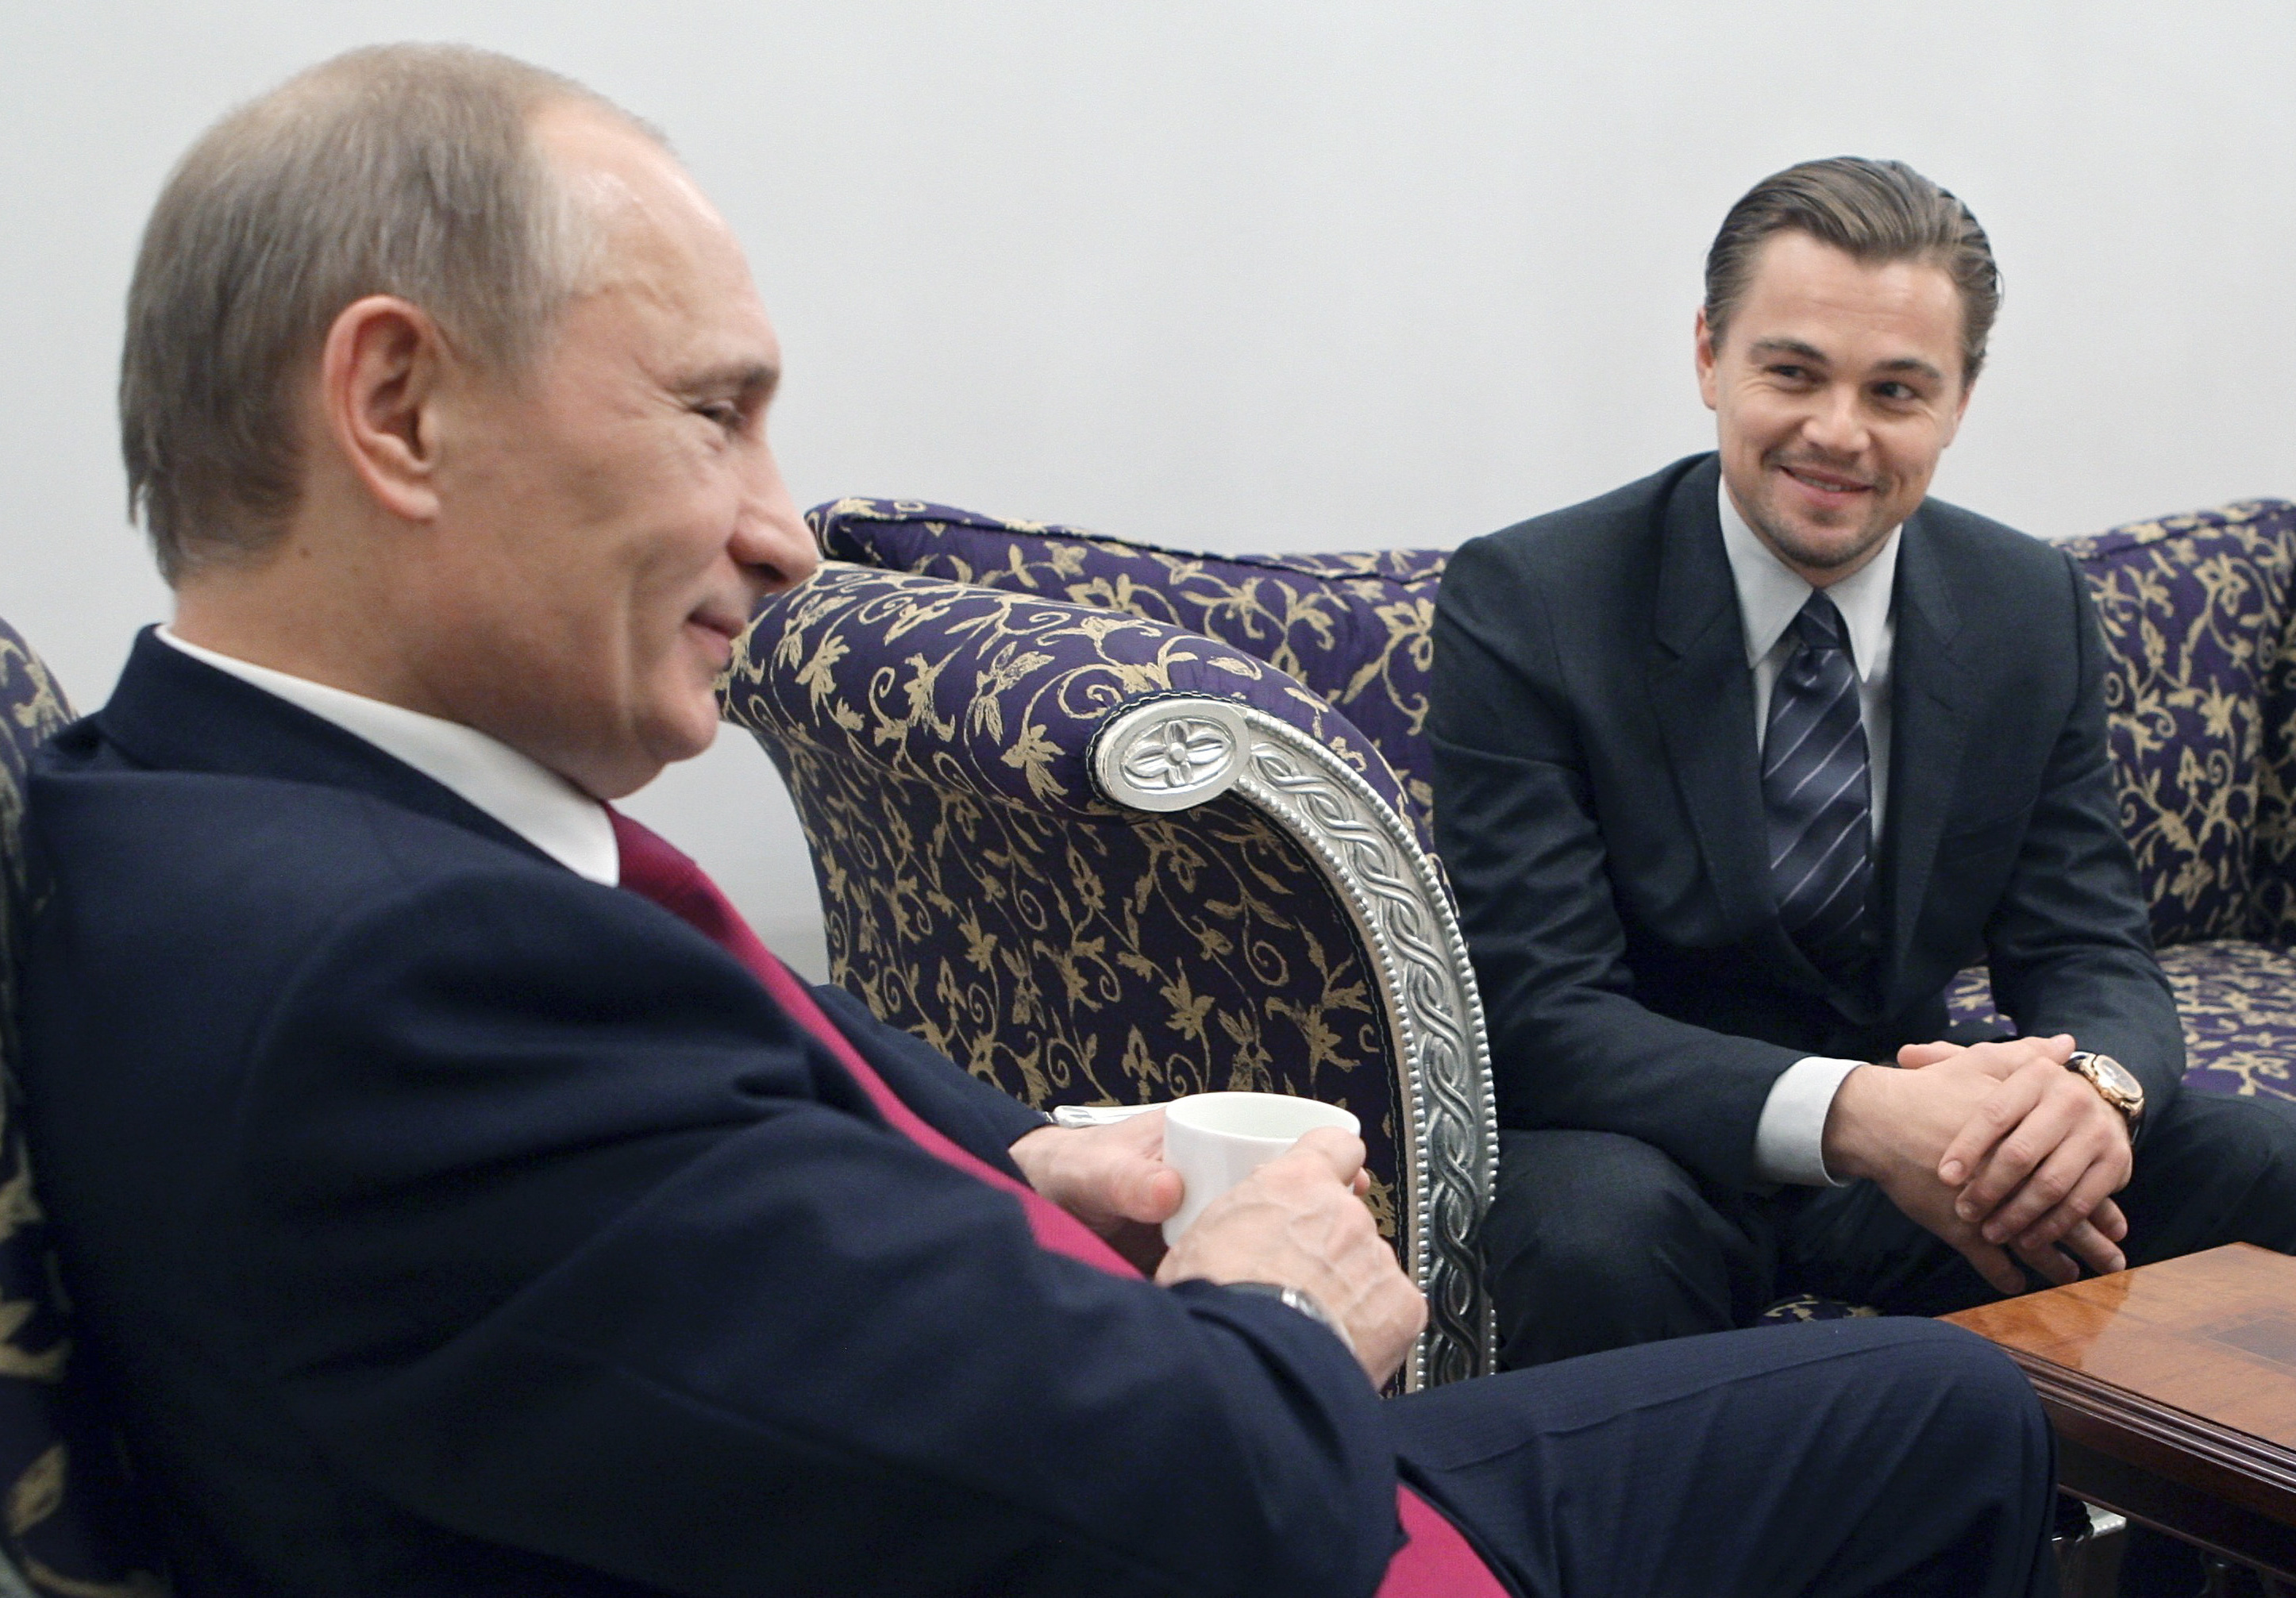 El presidente Putin con Leonardo DiCaprio en una imagen de 2010.